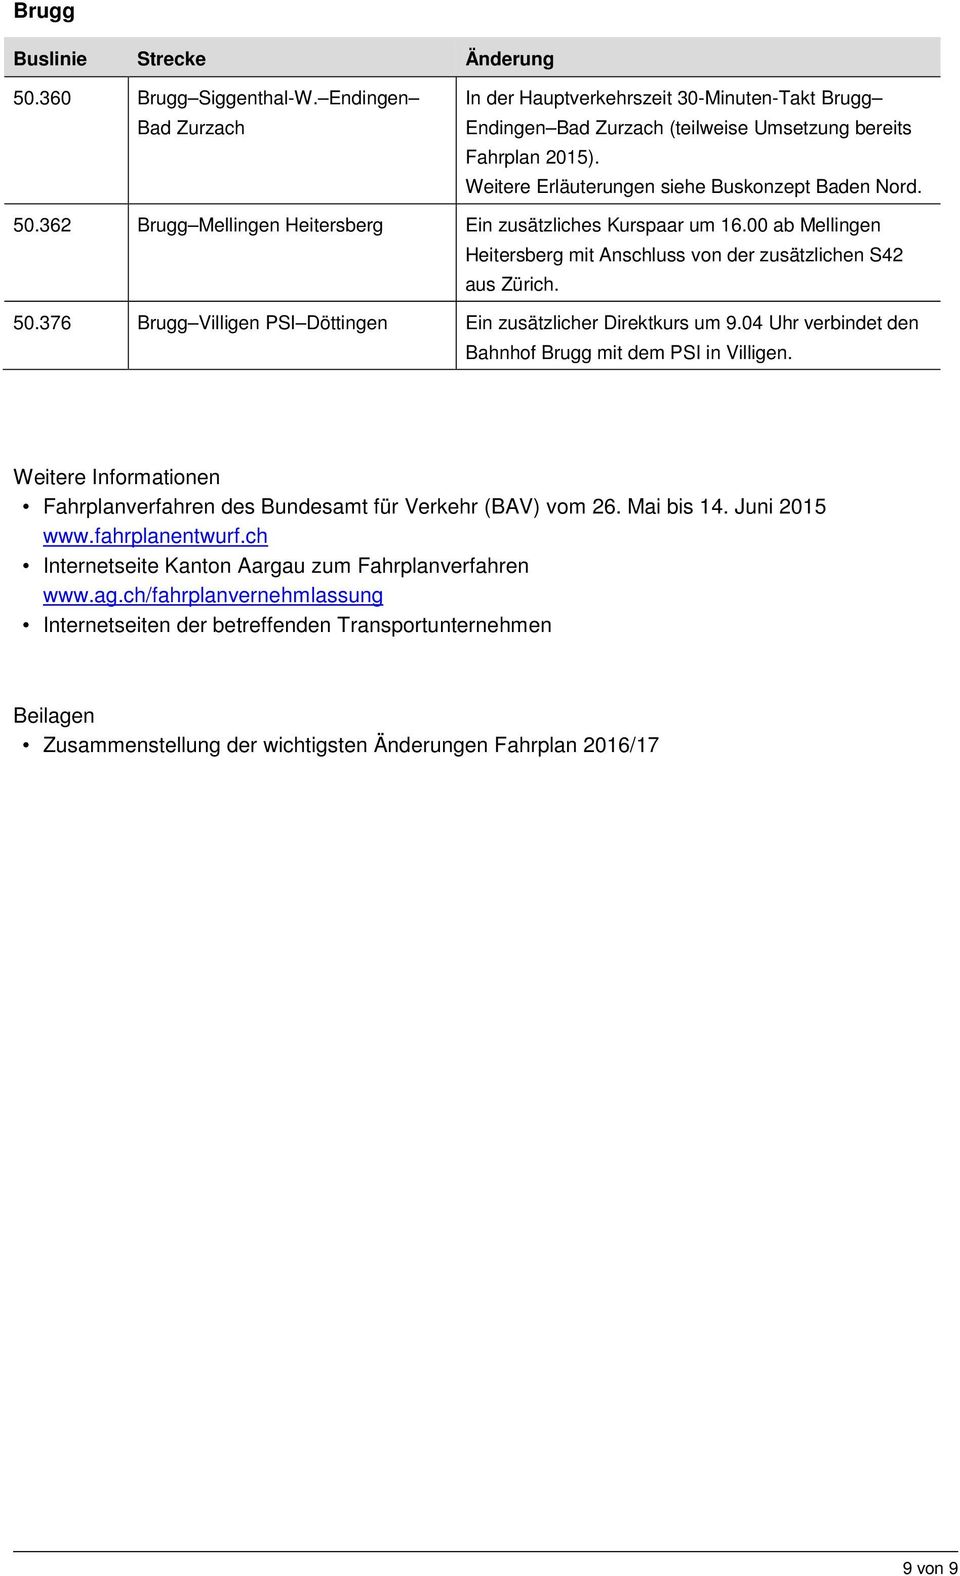 04 Uhr verbindet den Bahnhof Brugg mit dem PSI in Villigen. Weitere Informationen Fahrplanverfahren des Bundesamt für Verkehr (BAV) vom 26. Mai bis 14. Juni 2015 www.fahrplanentwurf.